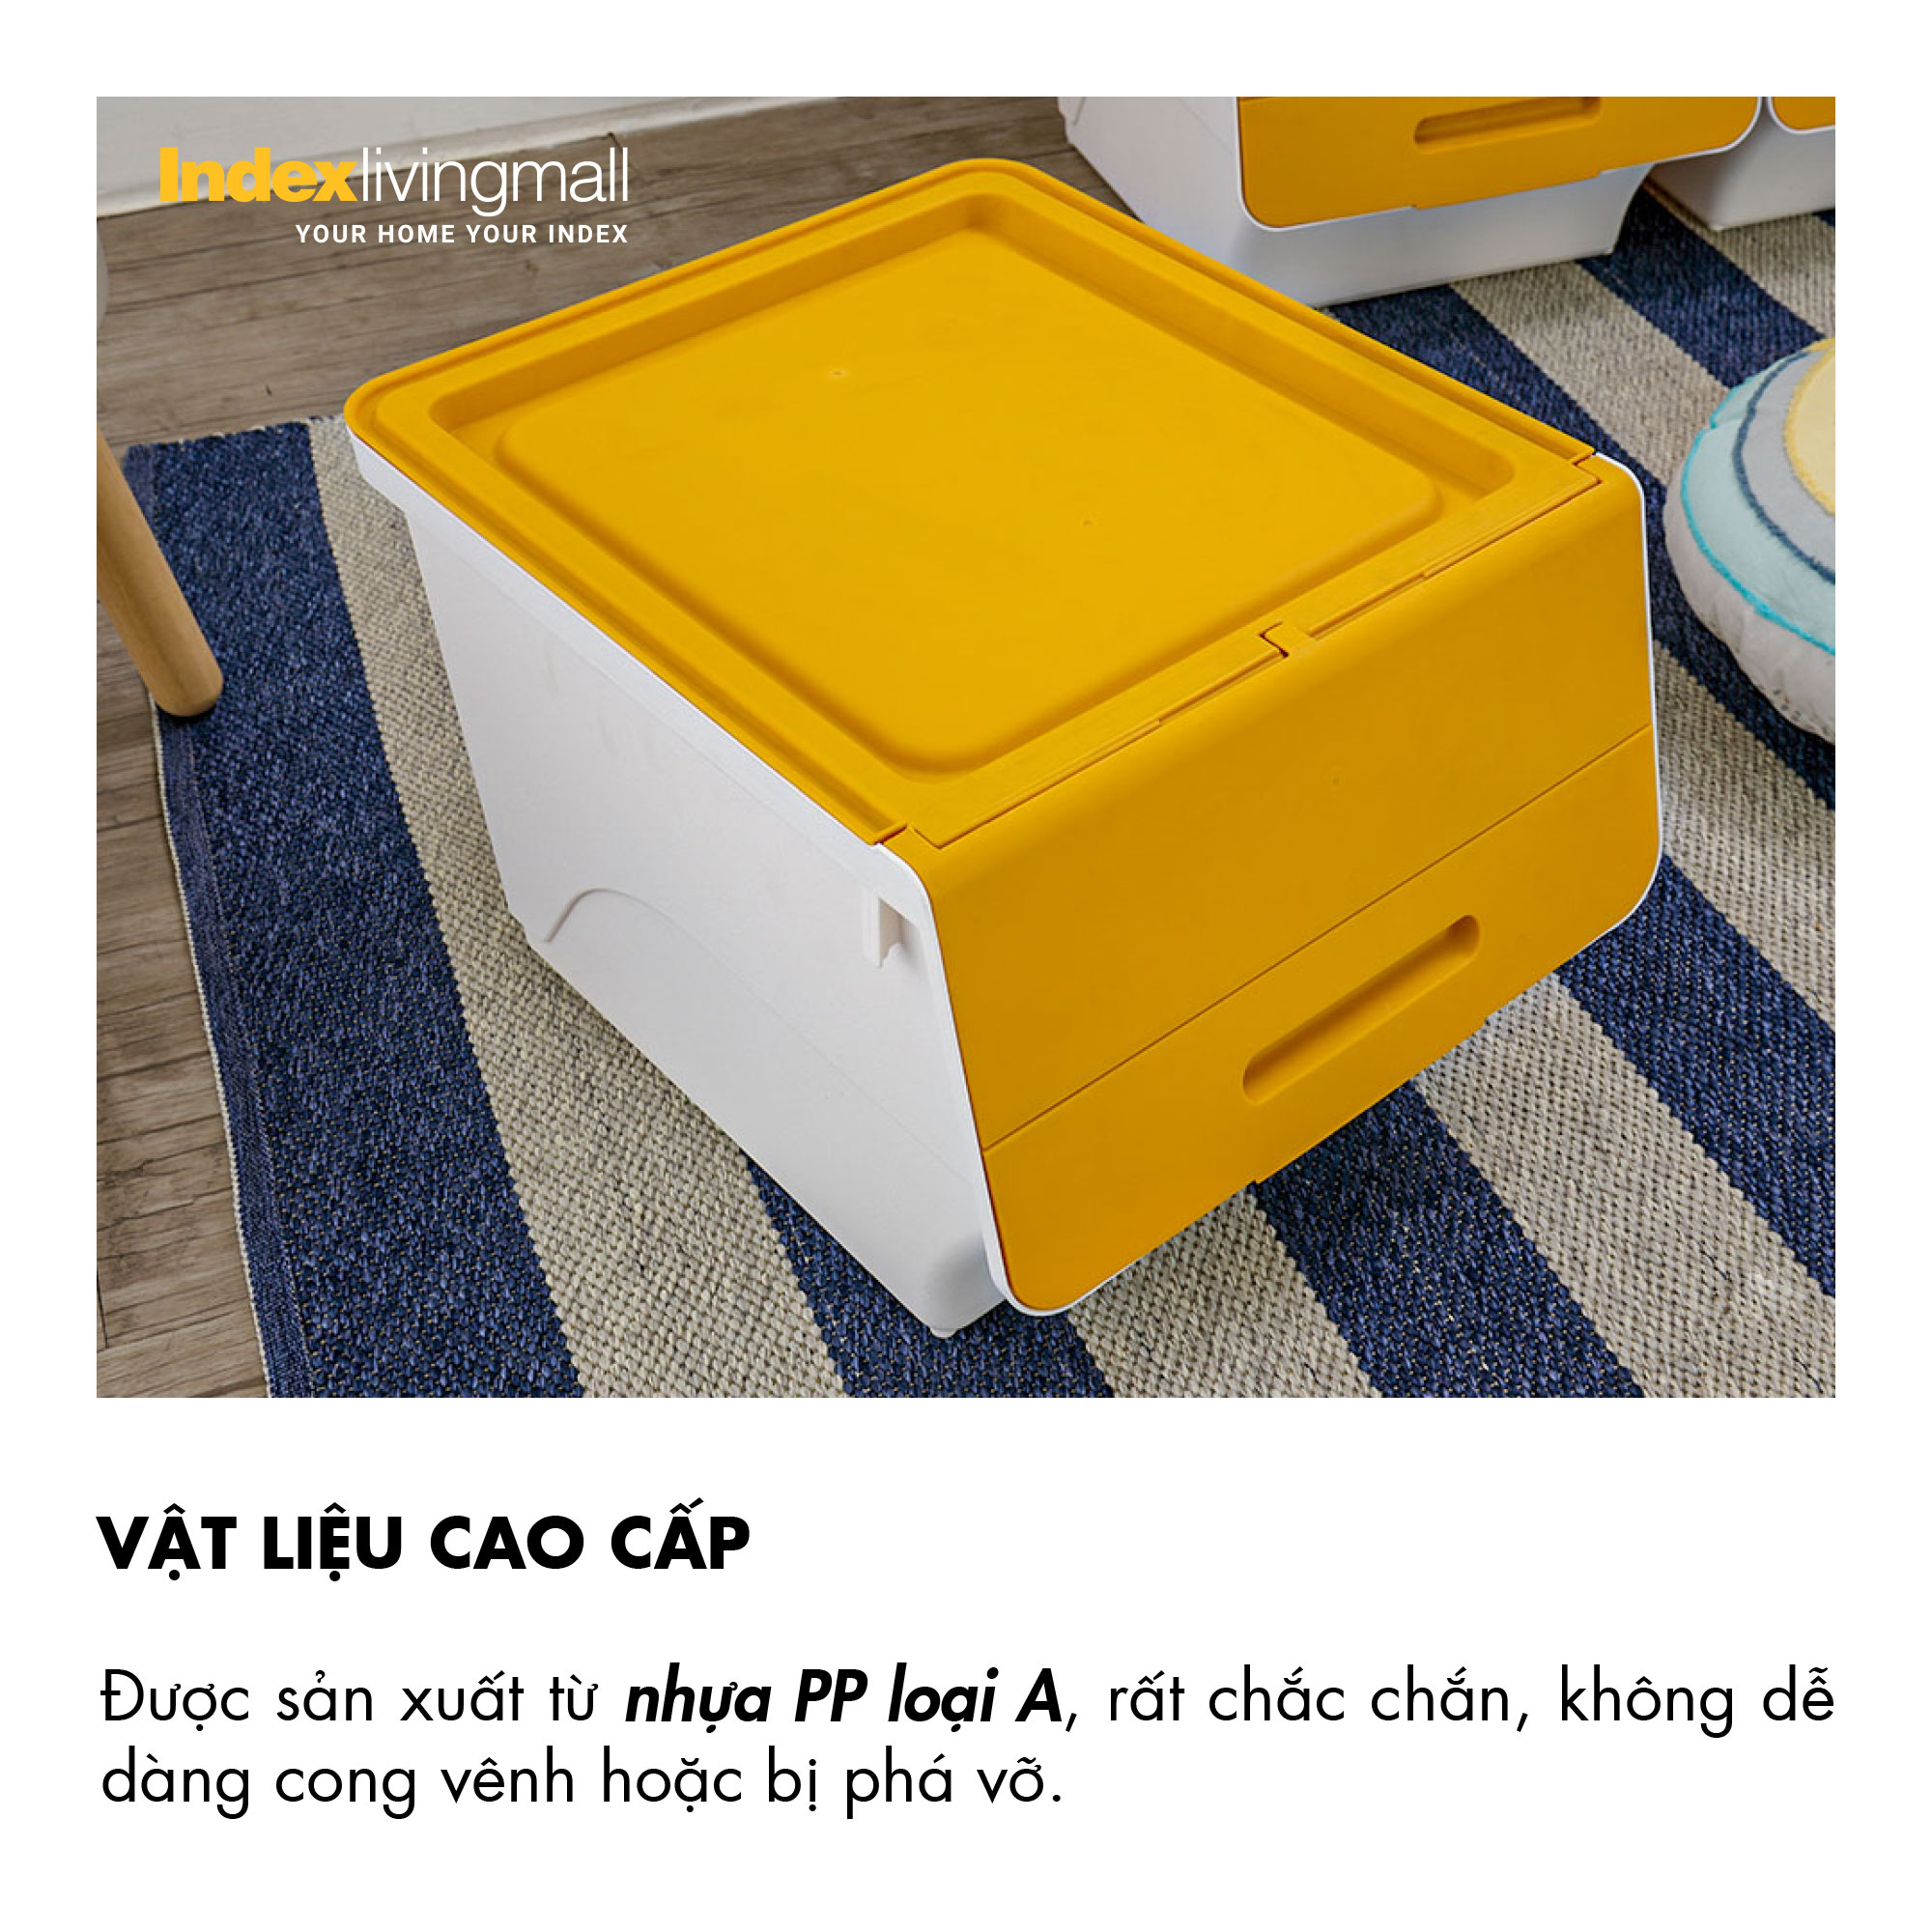 Thùng lưu trữ đa năng 34 lít OTELLO chất liệu nhựa PP trắng, nắp vàng, kích thước 45x38x31cm (DxRxC) | Index Living Mall | Nhập khẩu Thái Lan